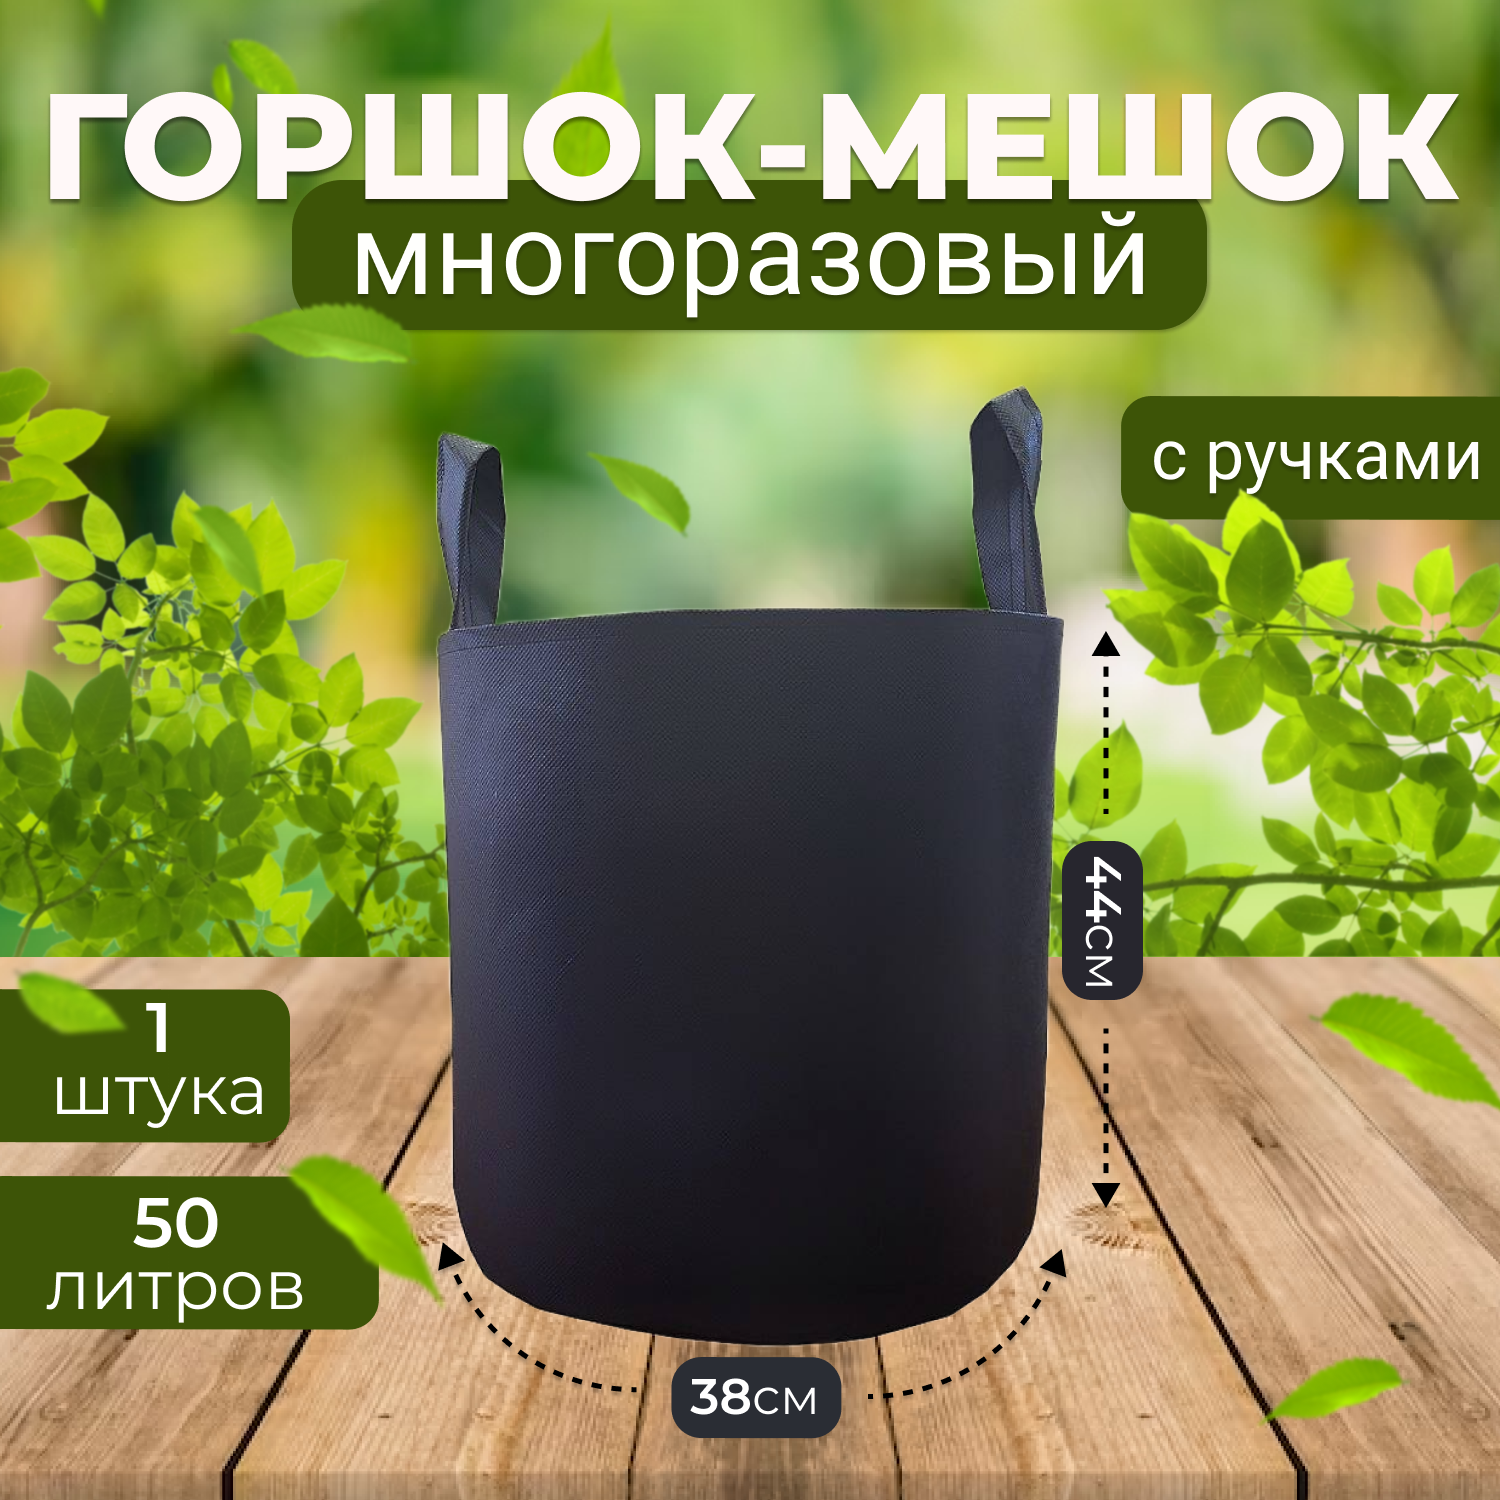 Тканевый горшок для растений Grower Green 50_litrov-G_1 с ручками 50л., 1шт.